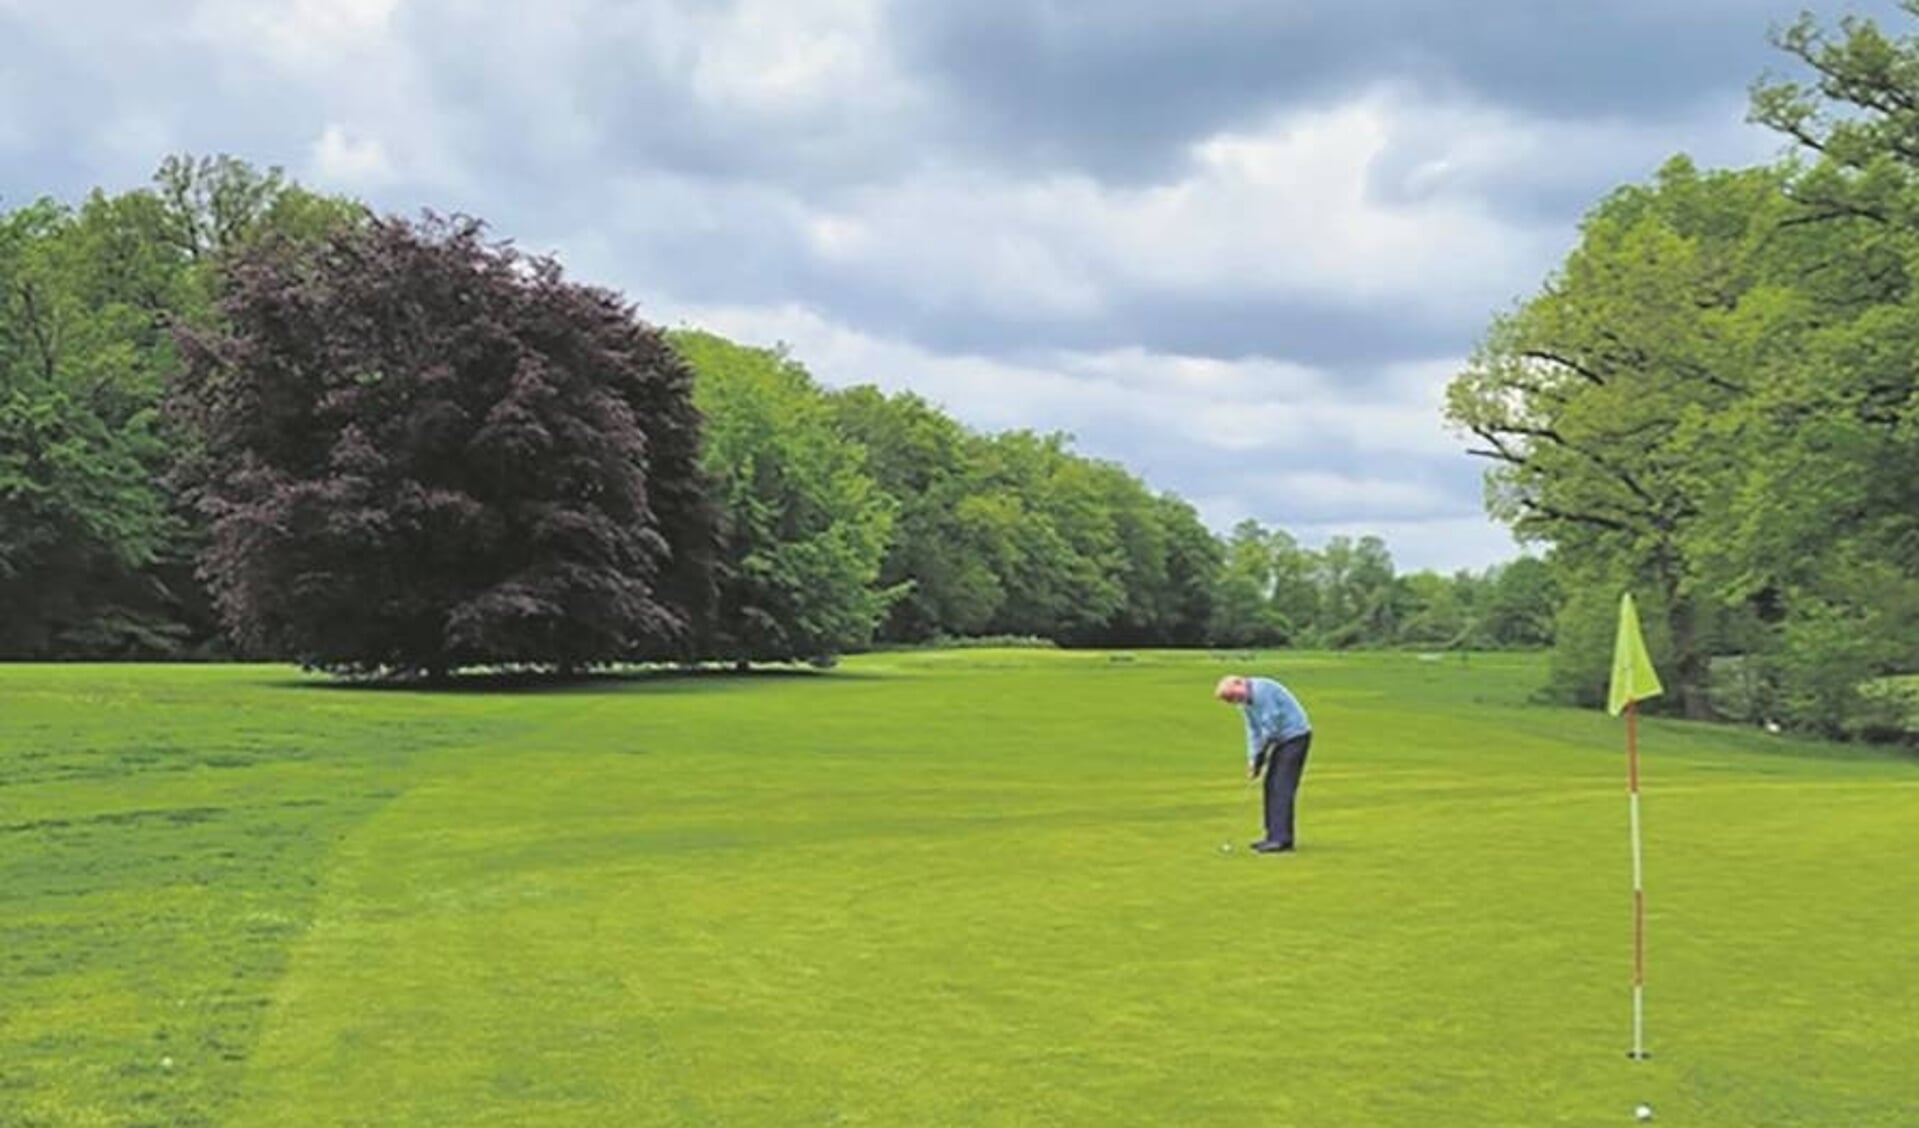 PW Golf wil er graag nog wat leden bij hebben. Hole 2 is de langste hole met 276 meter, hole 5 met 78 meter de kortste.